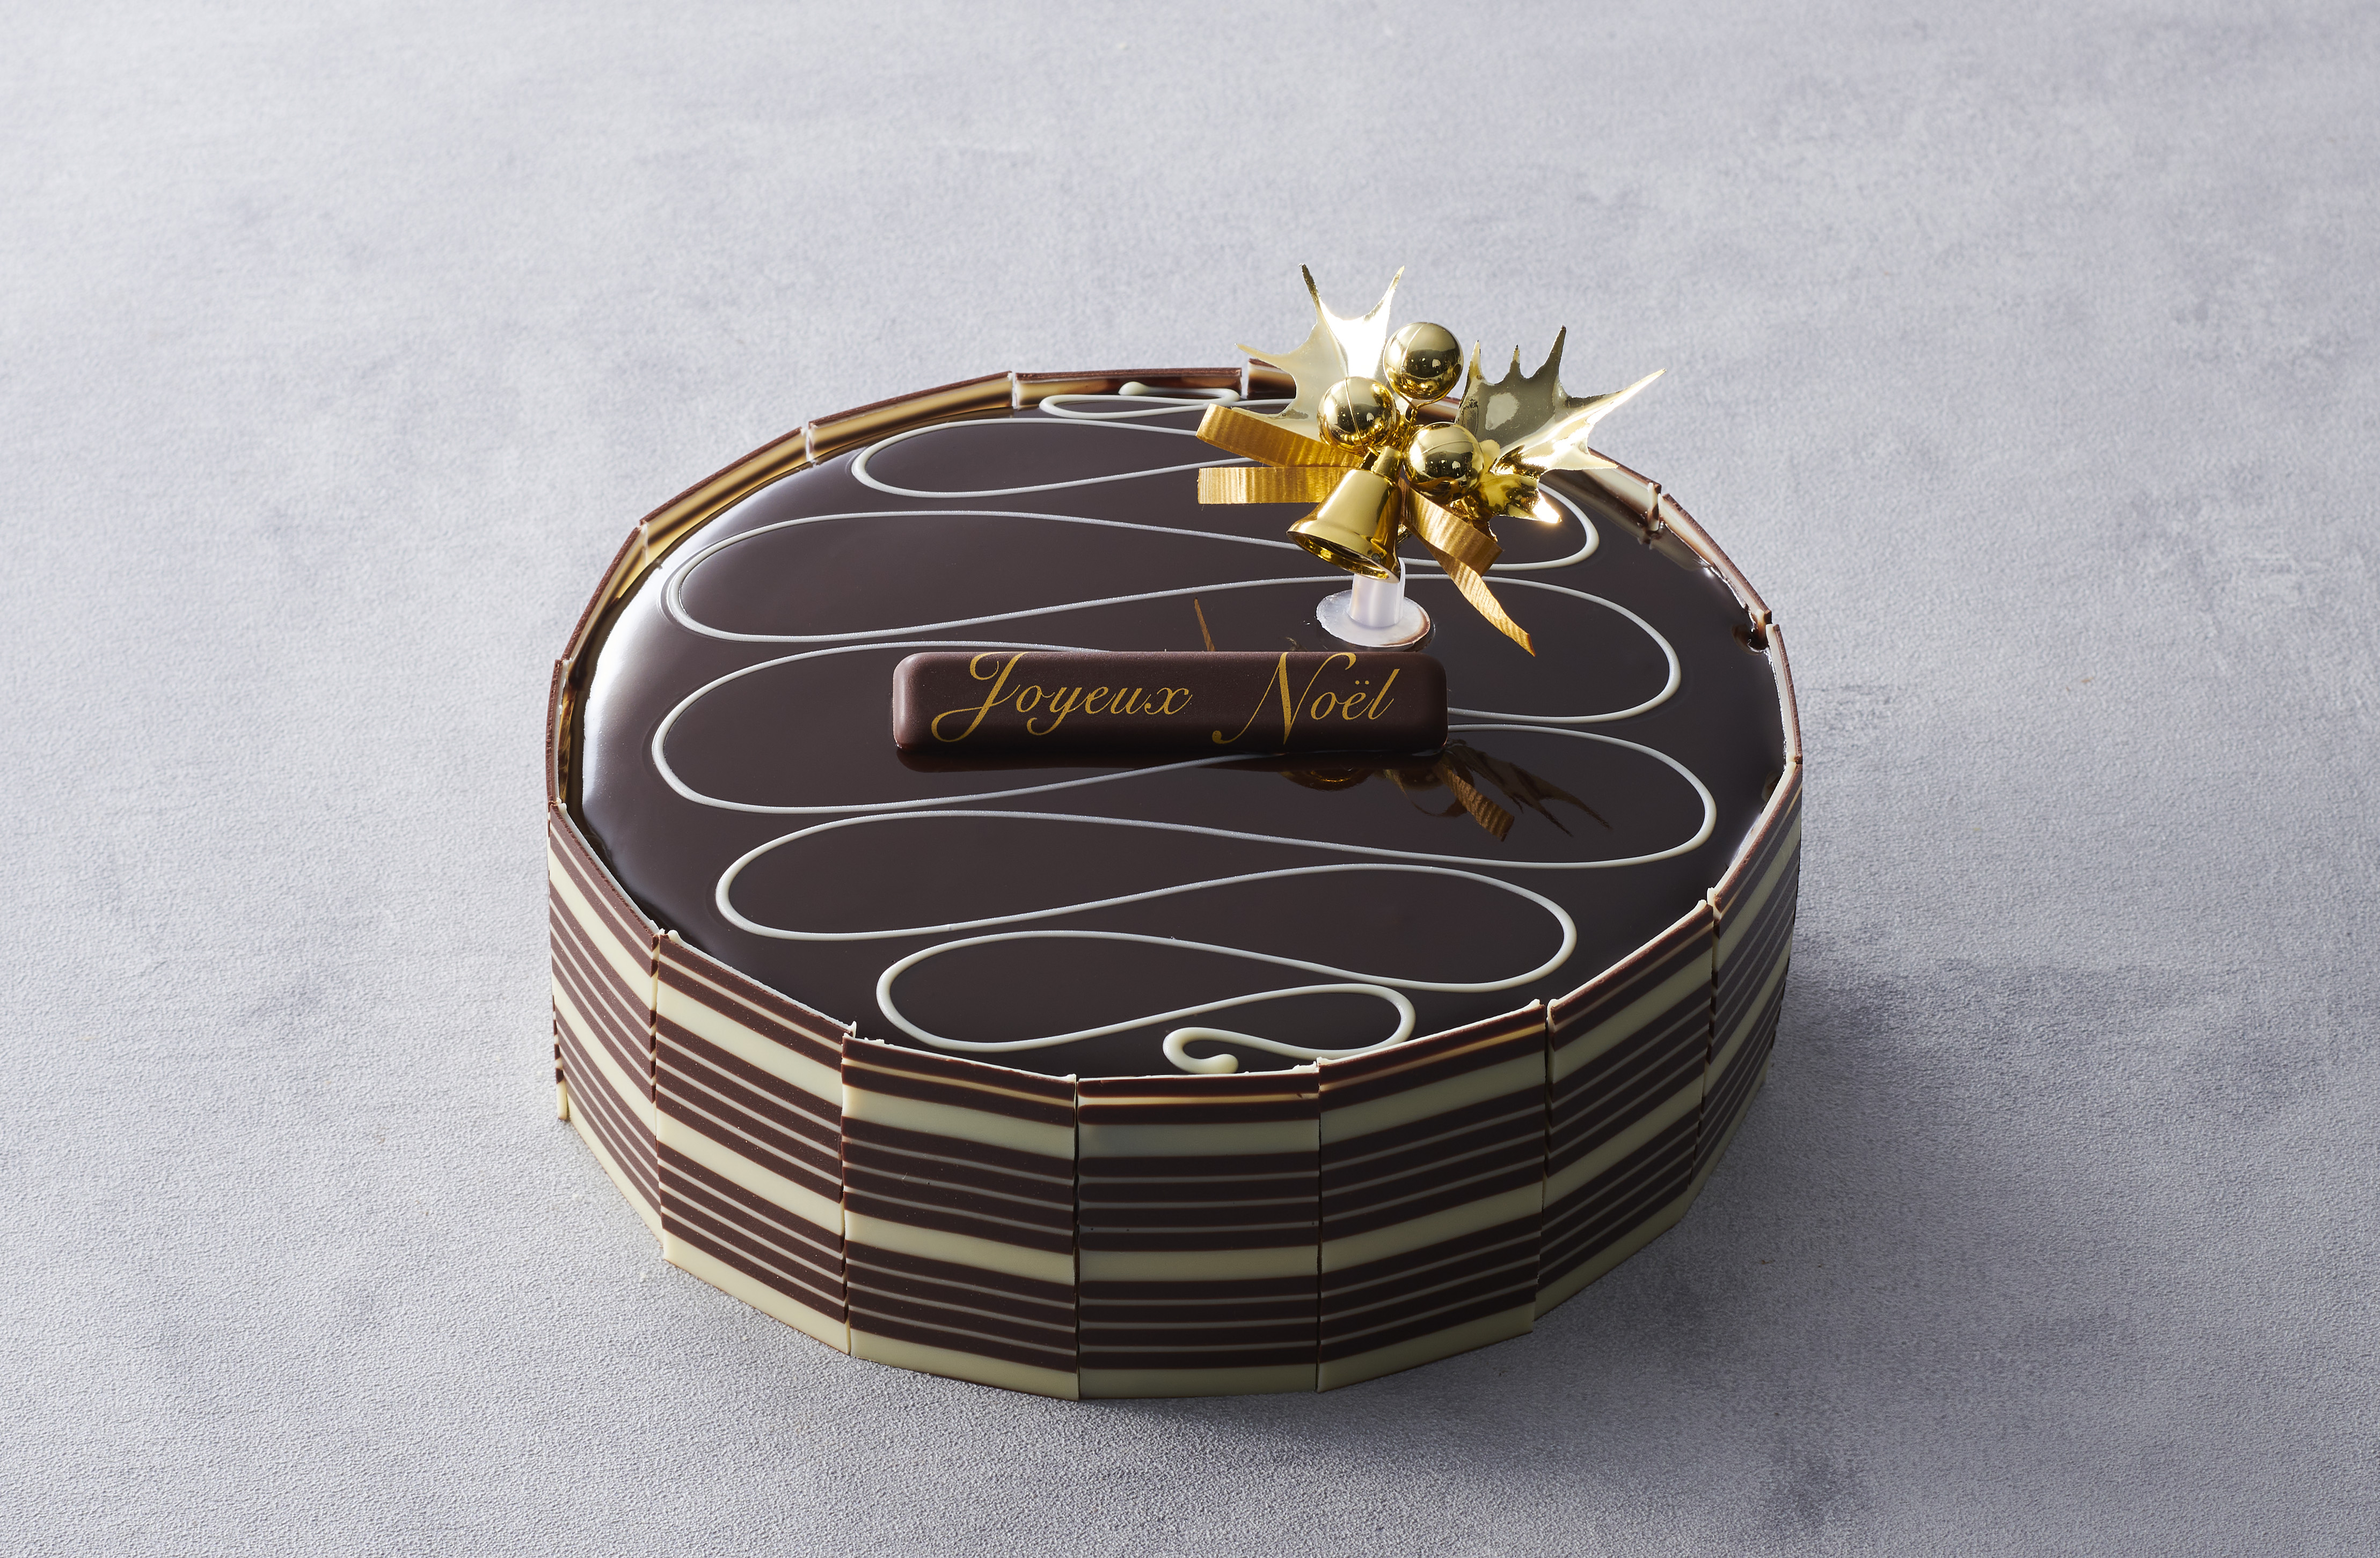 ベルギー王室御用達チョコレートブランド「ヴィタメール」がお届けする2021年クリスマスケーキコレクション10月中旬よりご予約受付開始のサブ画像3